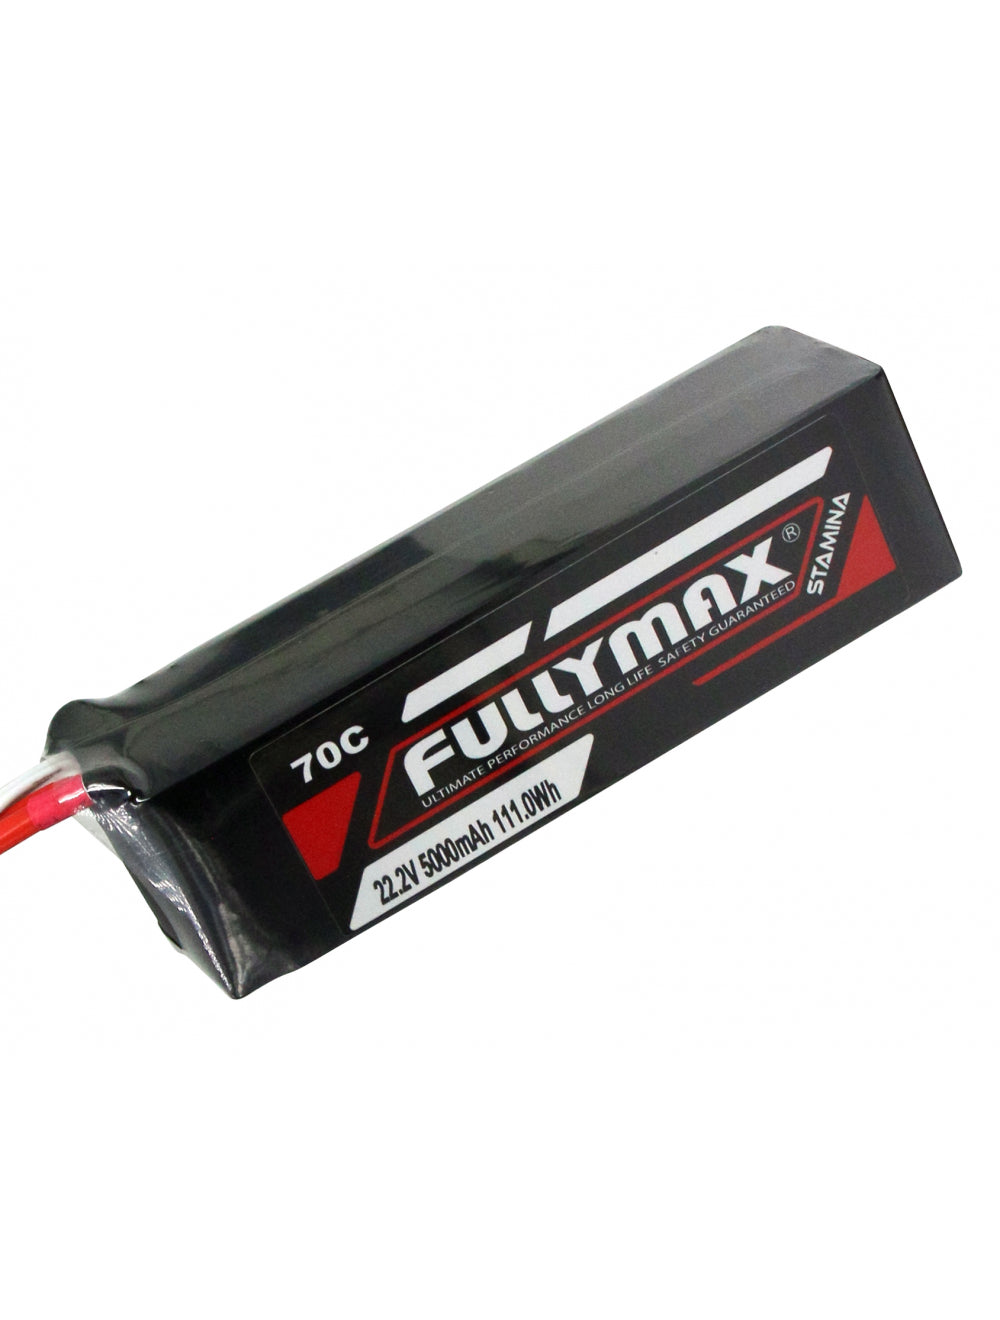 Overlander Fullymax 5000mAh 22.2V 6S 70C LiPo Battery - EC5 Connector 3442